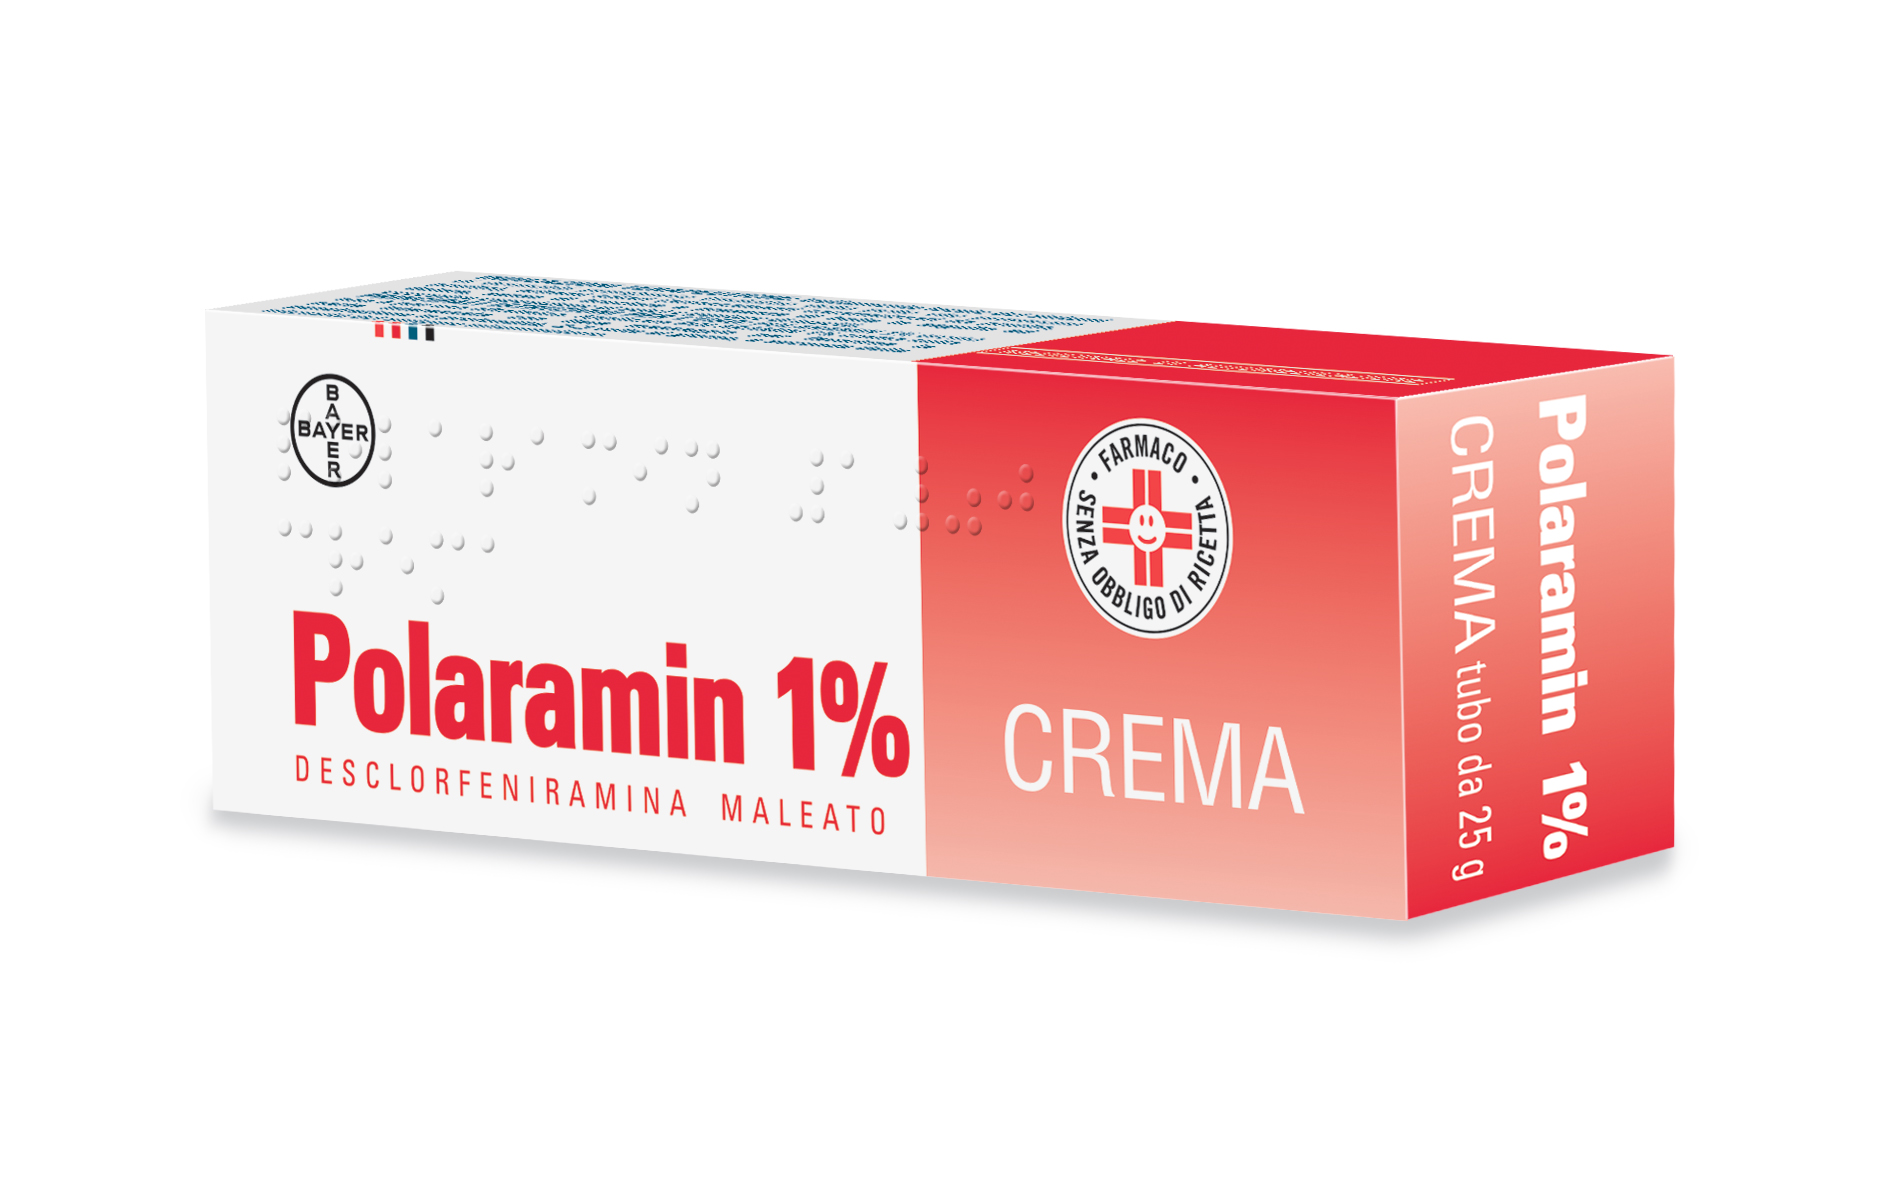 Polaramin*crema 25g 1% - polaramin 1% crema 25g